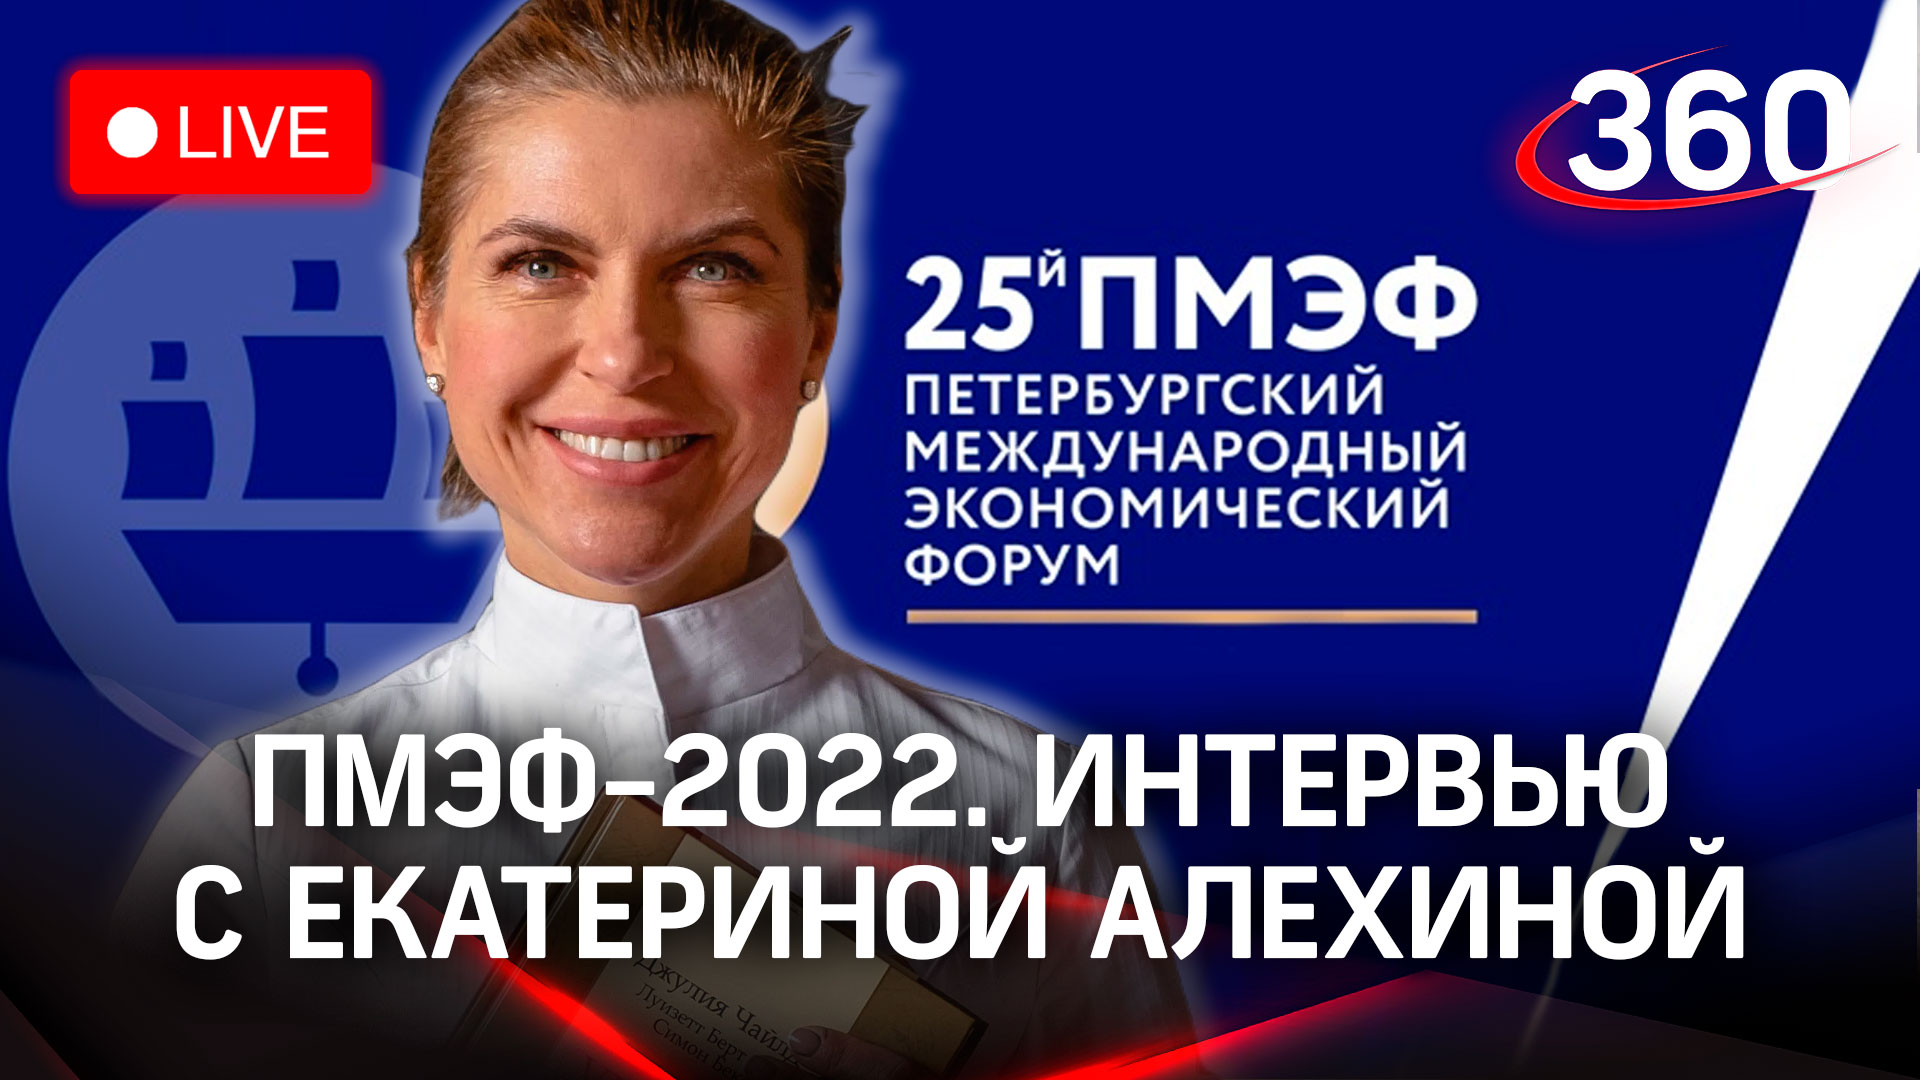 ПМЭФ-2022: интервью с Екатериной Алехиной, первой в России женщиной шеф-поваром со звездой Michelin